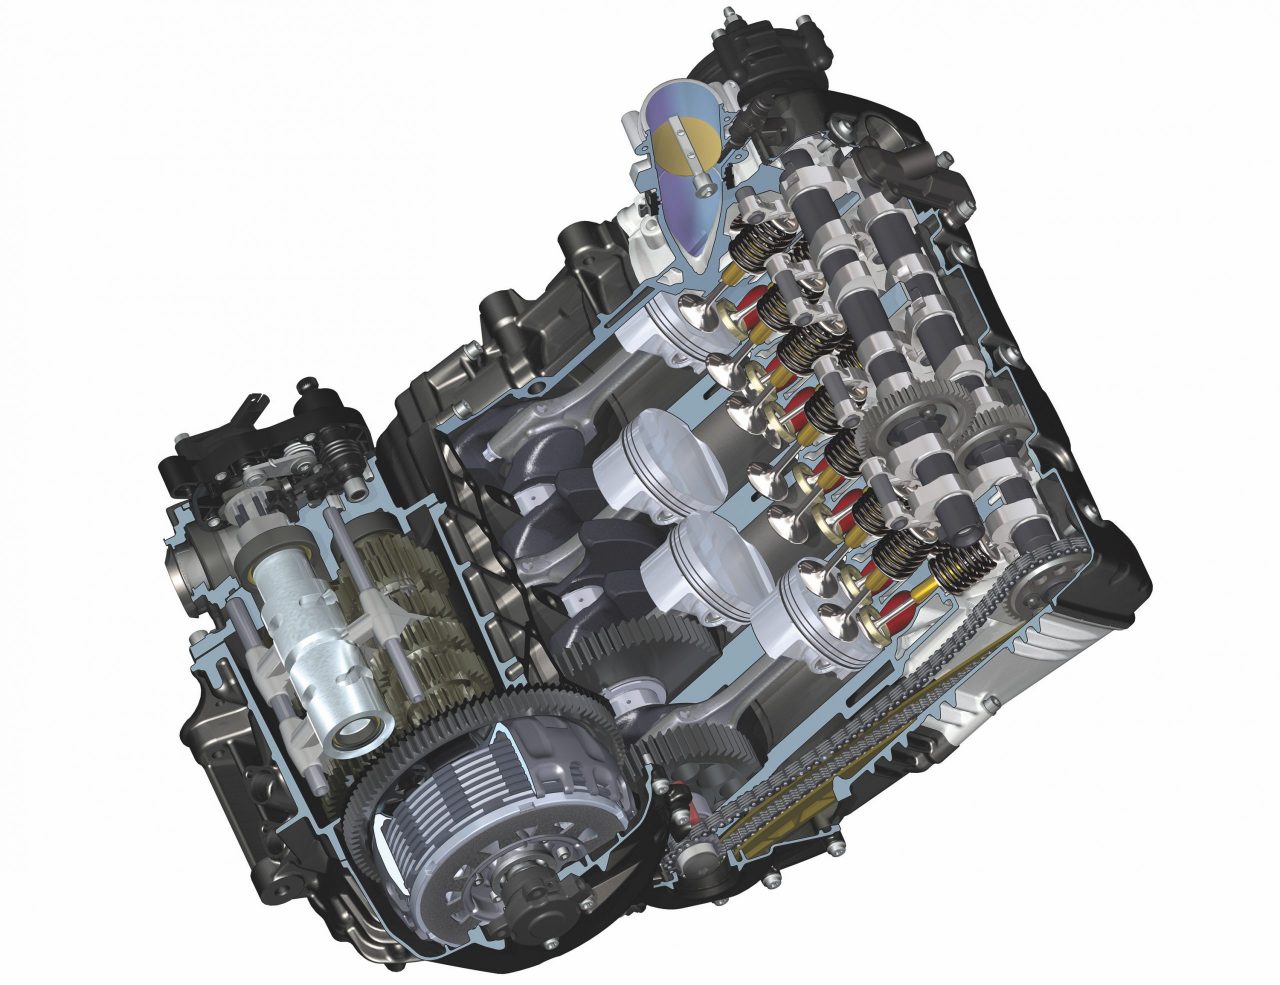 BMW K1300 engine